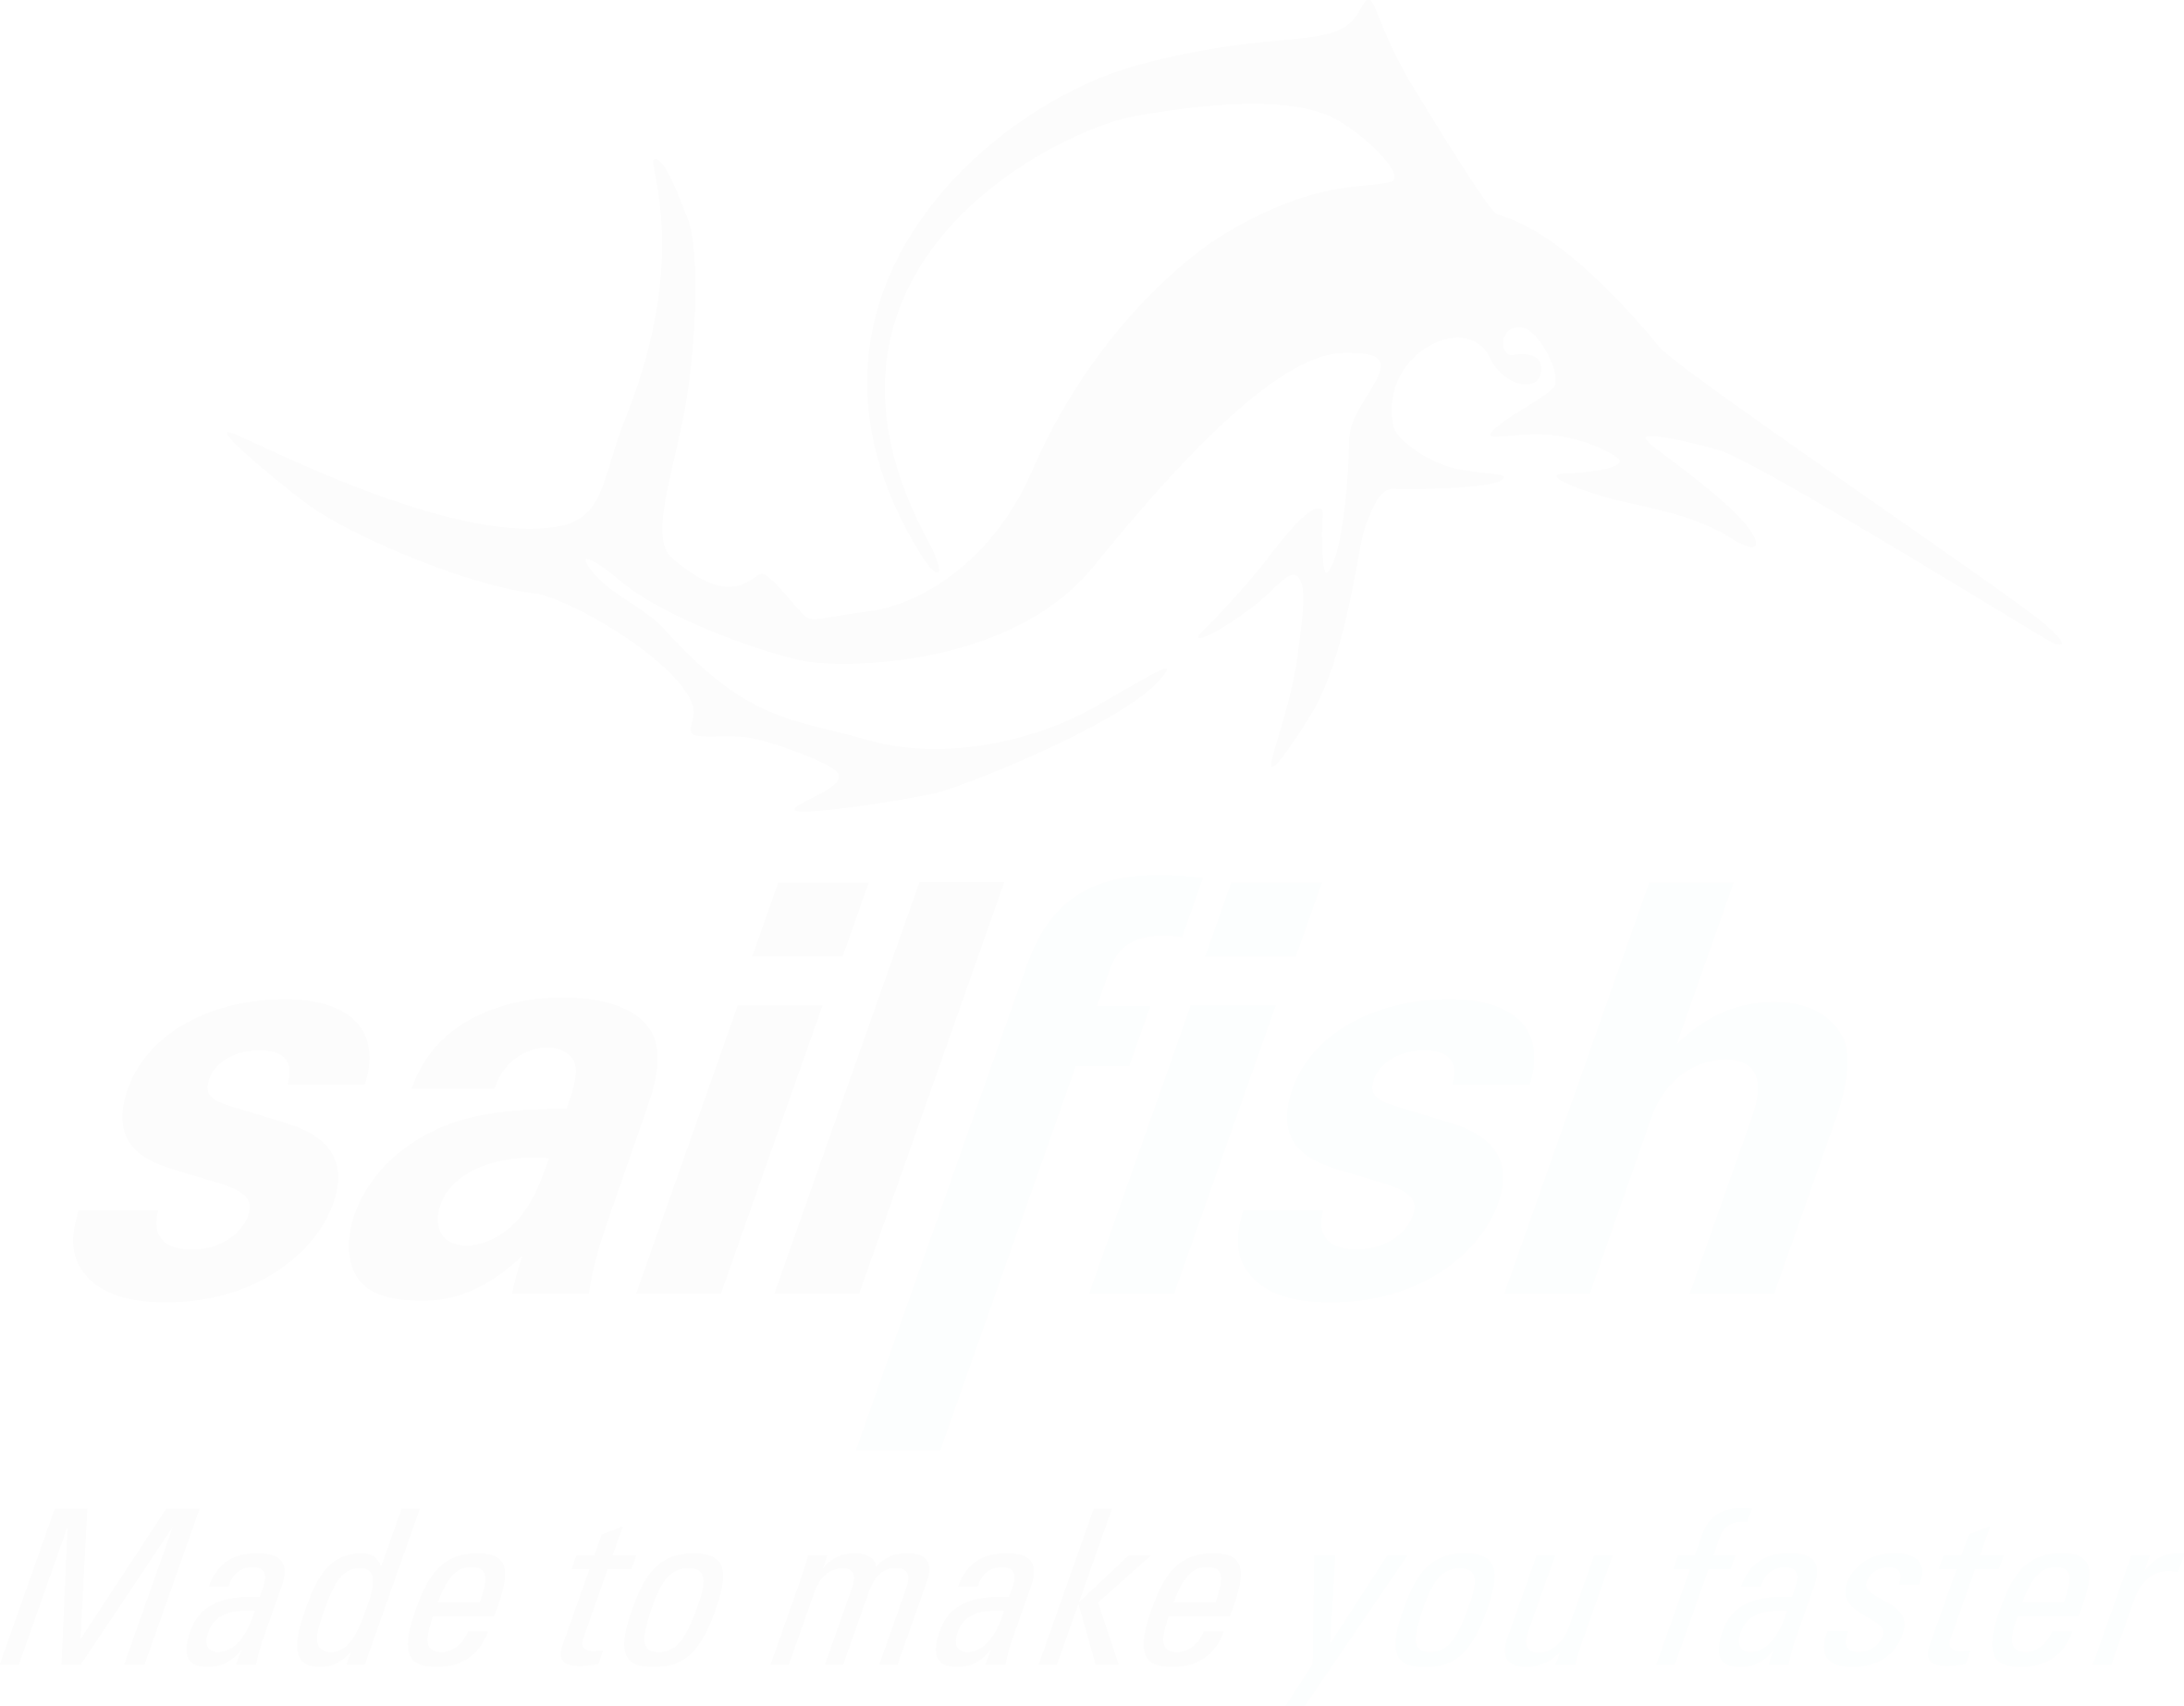 Sailfish Logo